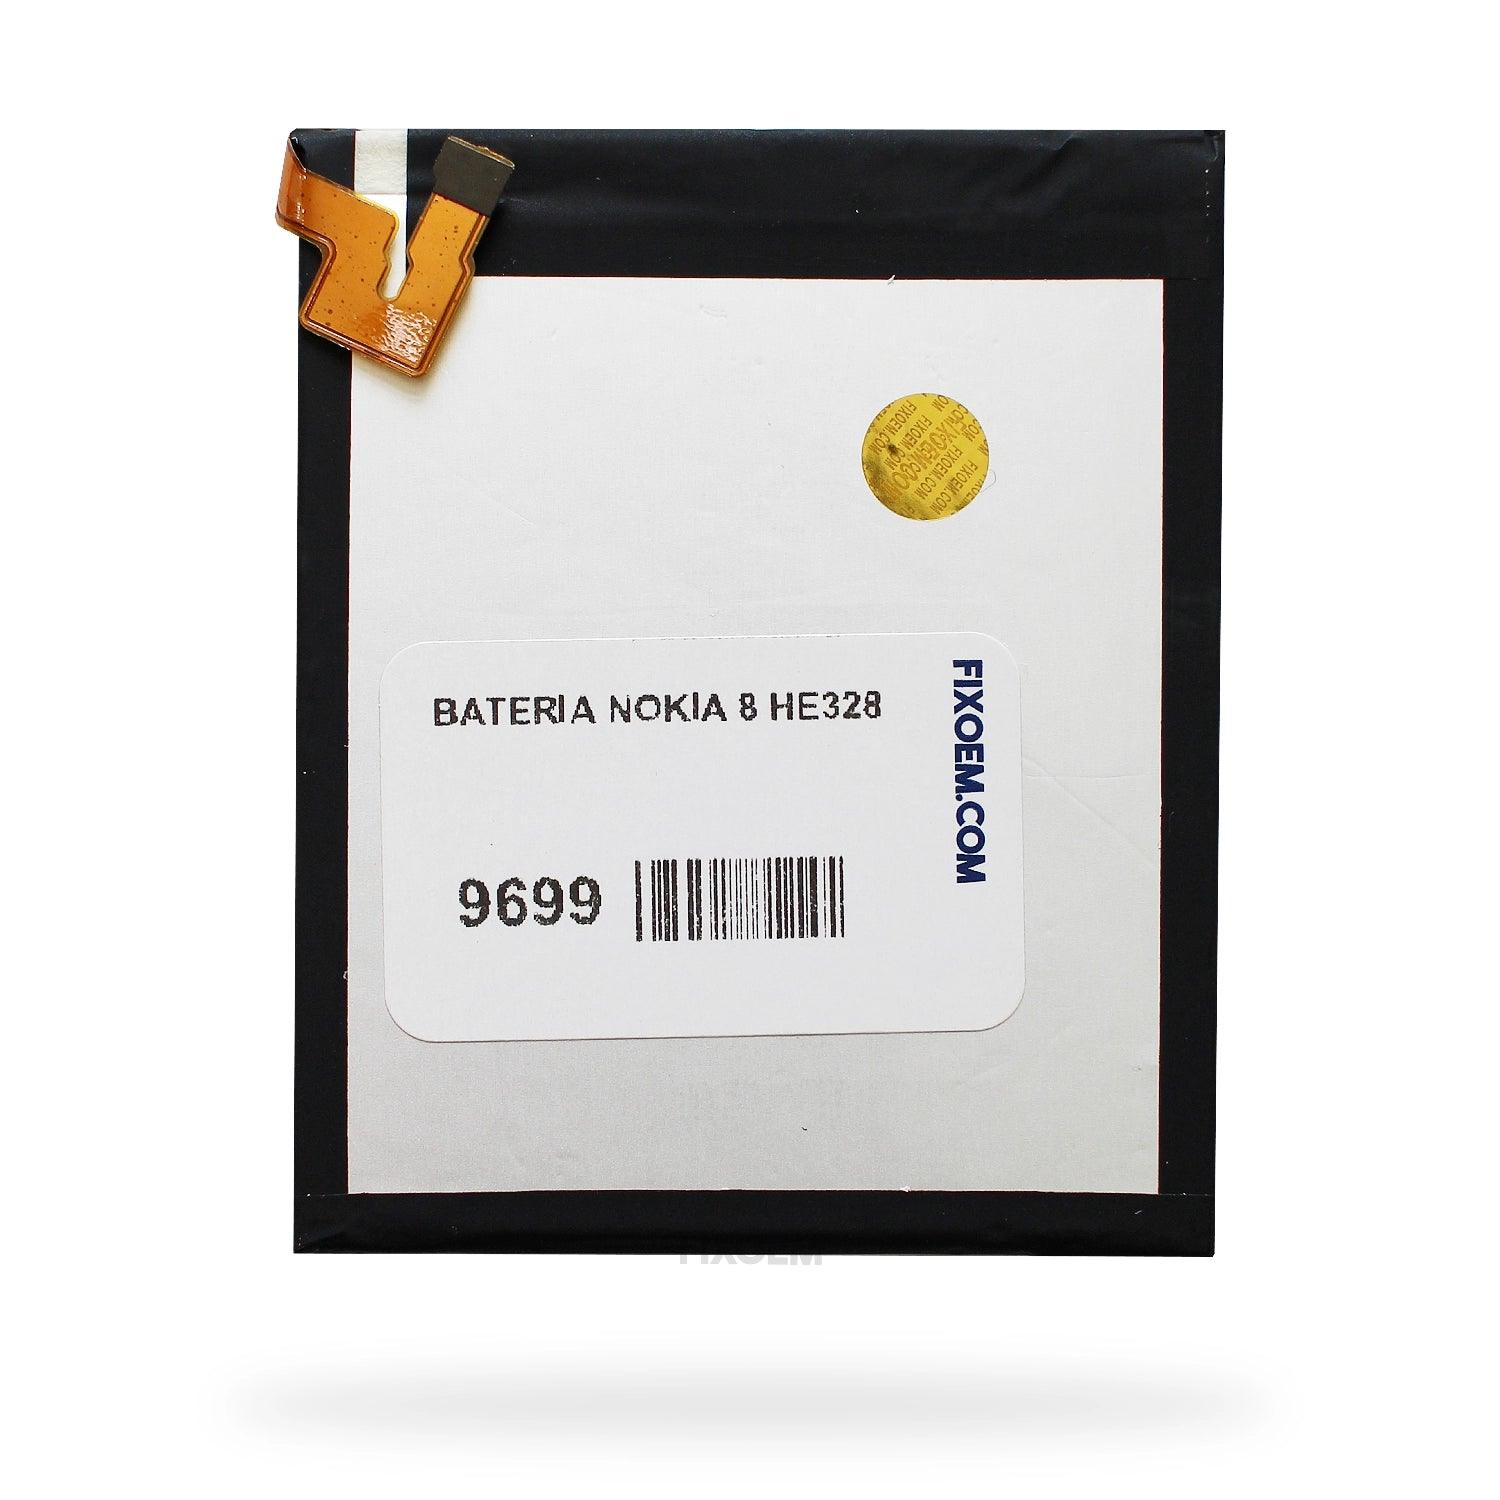 Bateria Nokia 8 He328 Ta-1004 Ta-1012 Ta-1052 He328. a solo $ 140.00 Refaccion y puestos celulares, refurbish y microelectronica.- FixOEM